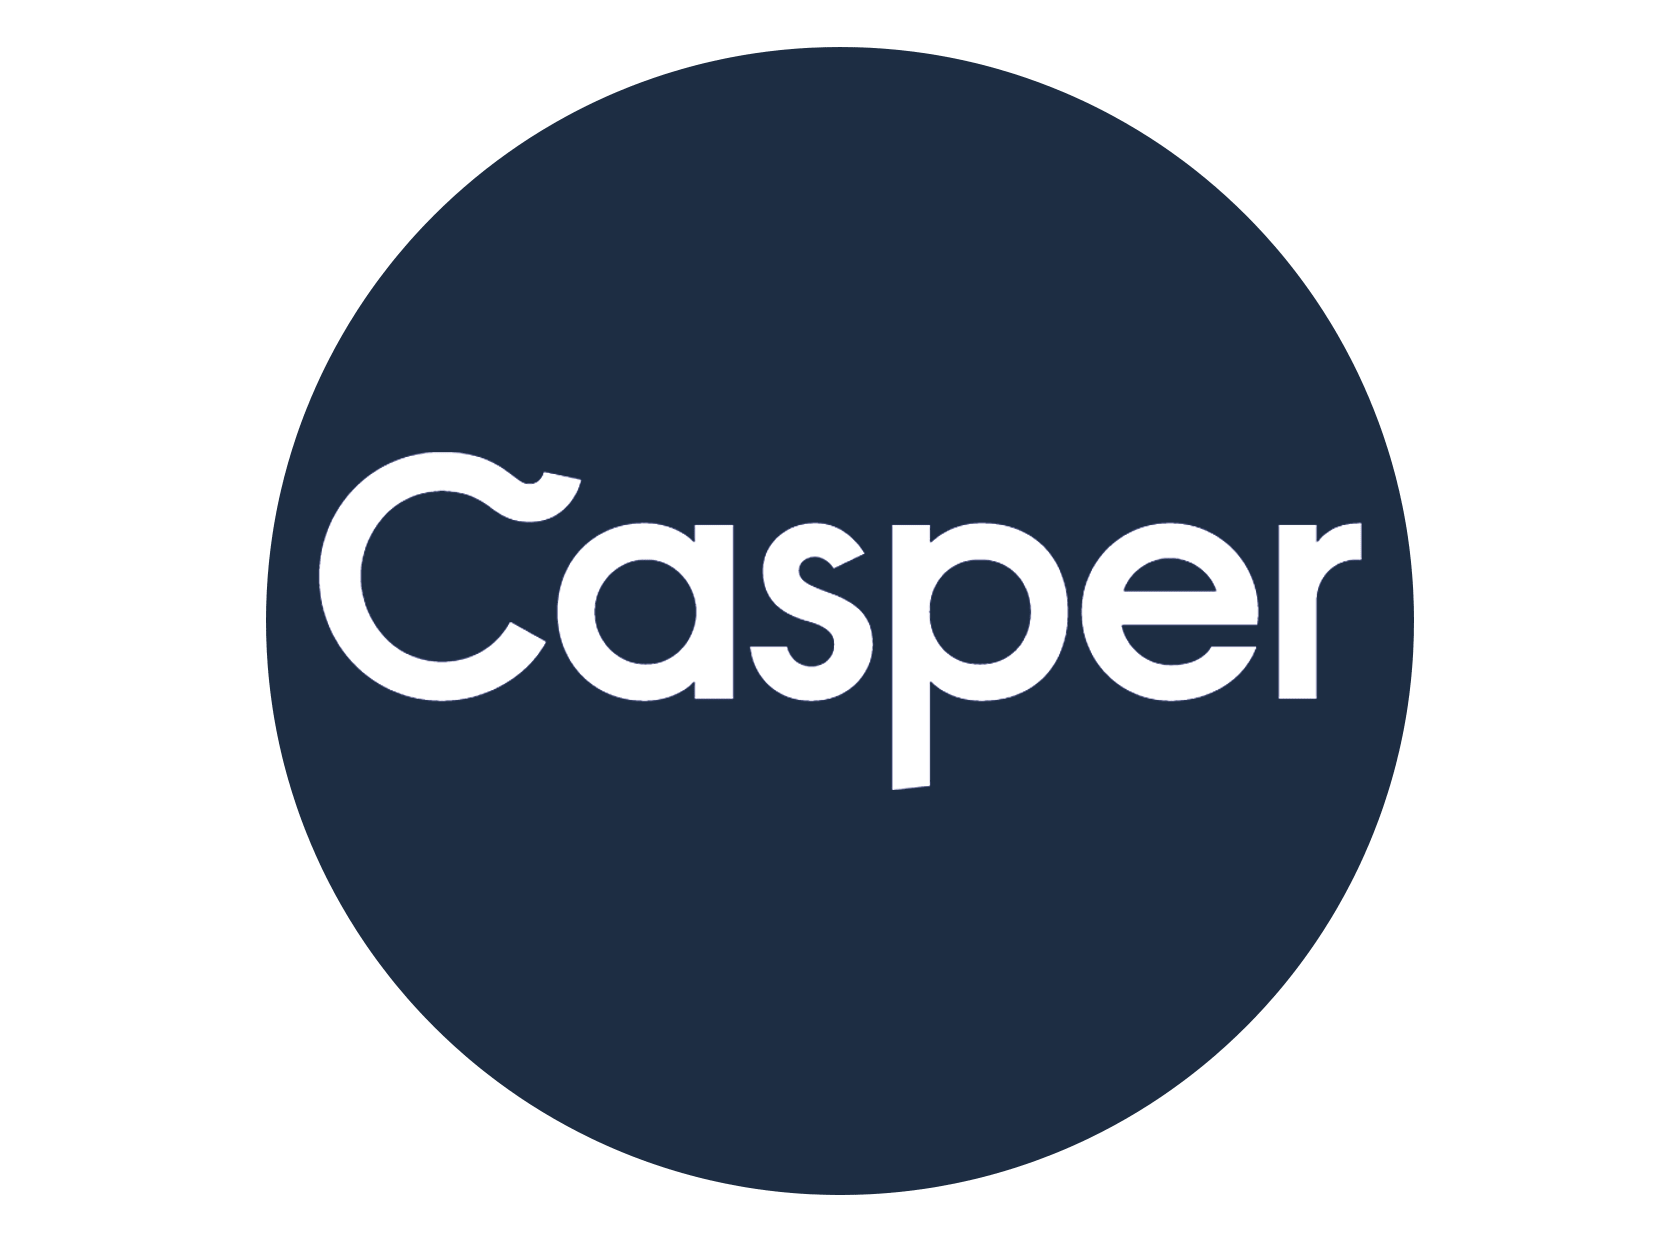 Casper logo for billboard advertising